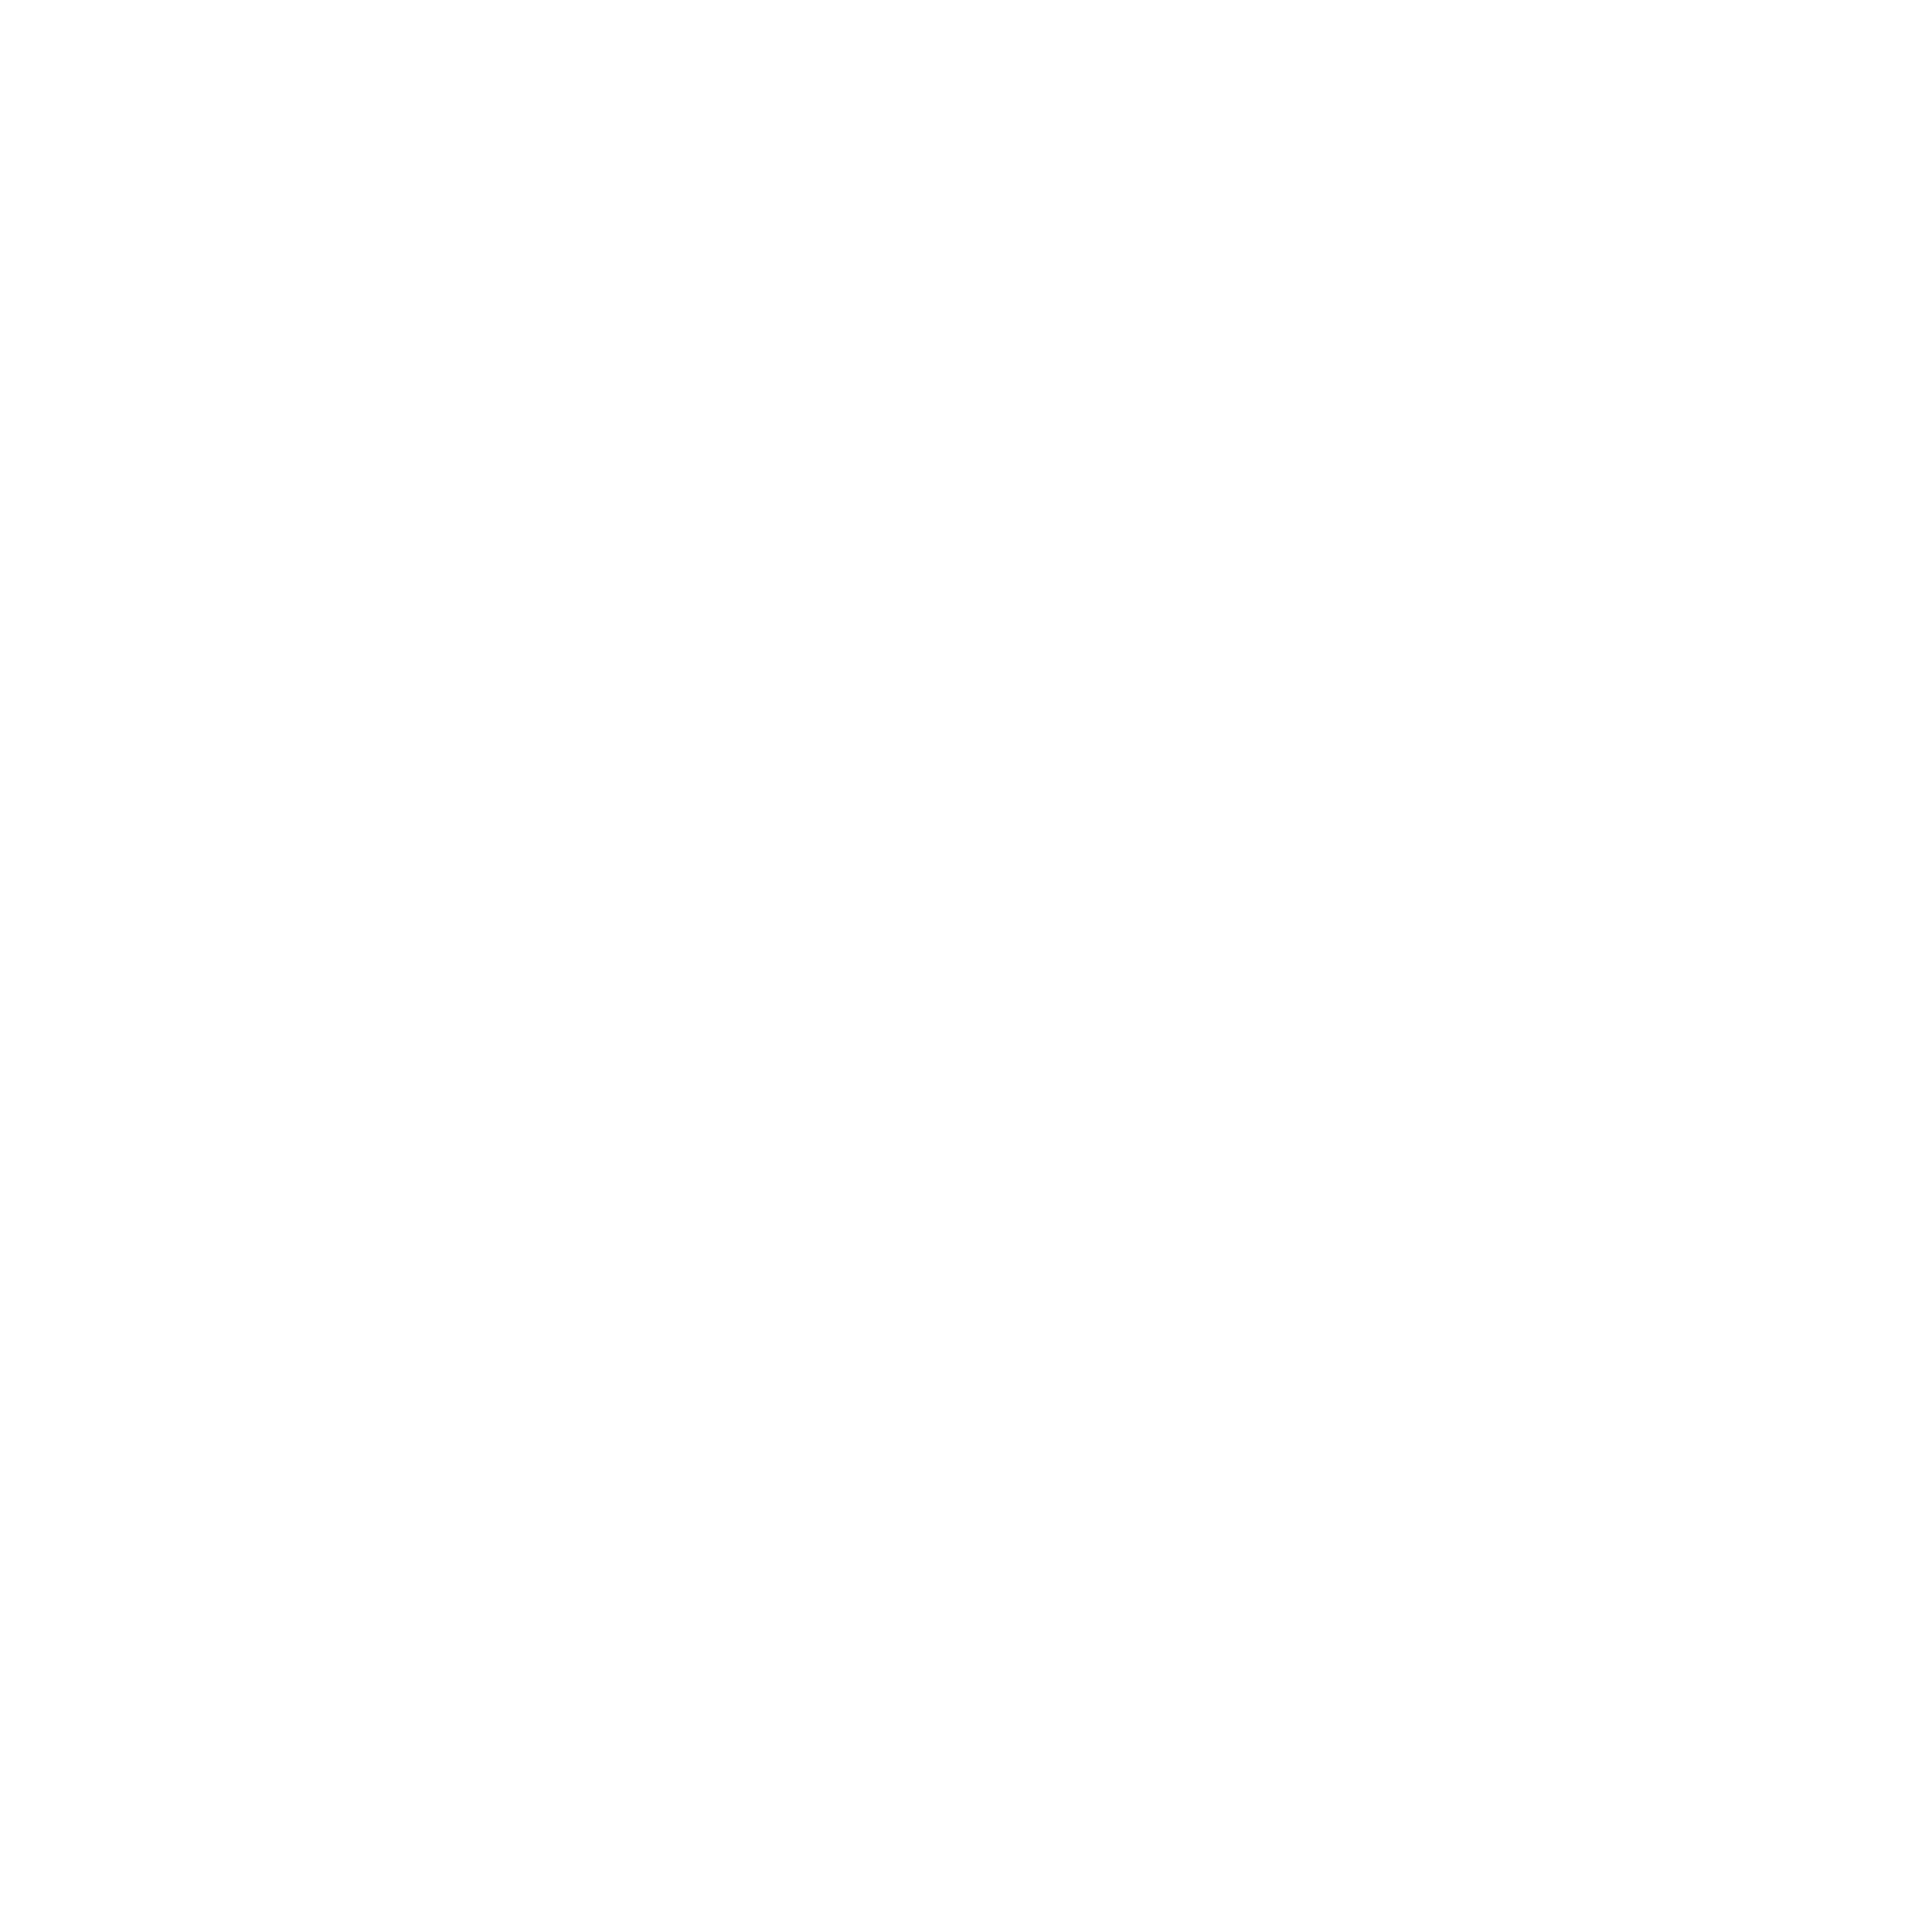 LBR&A